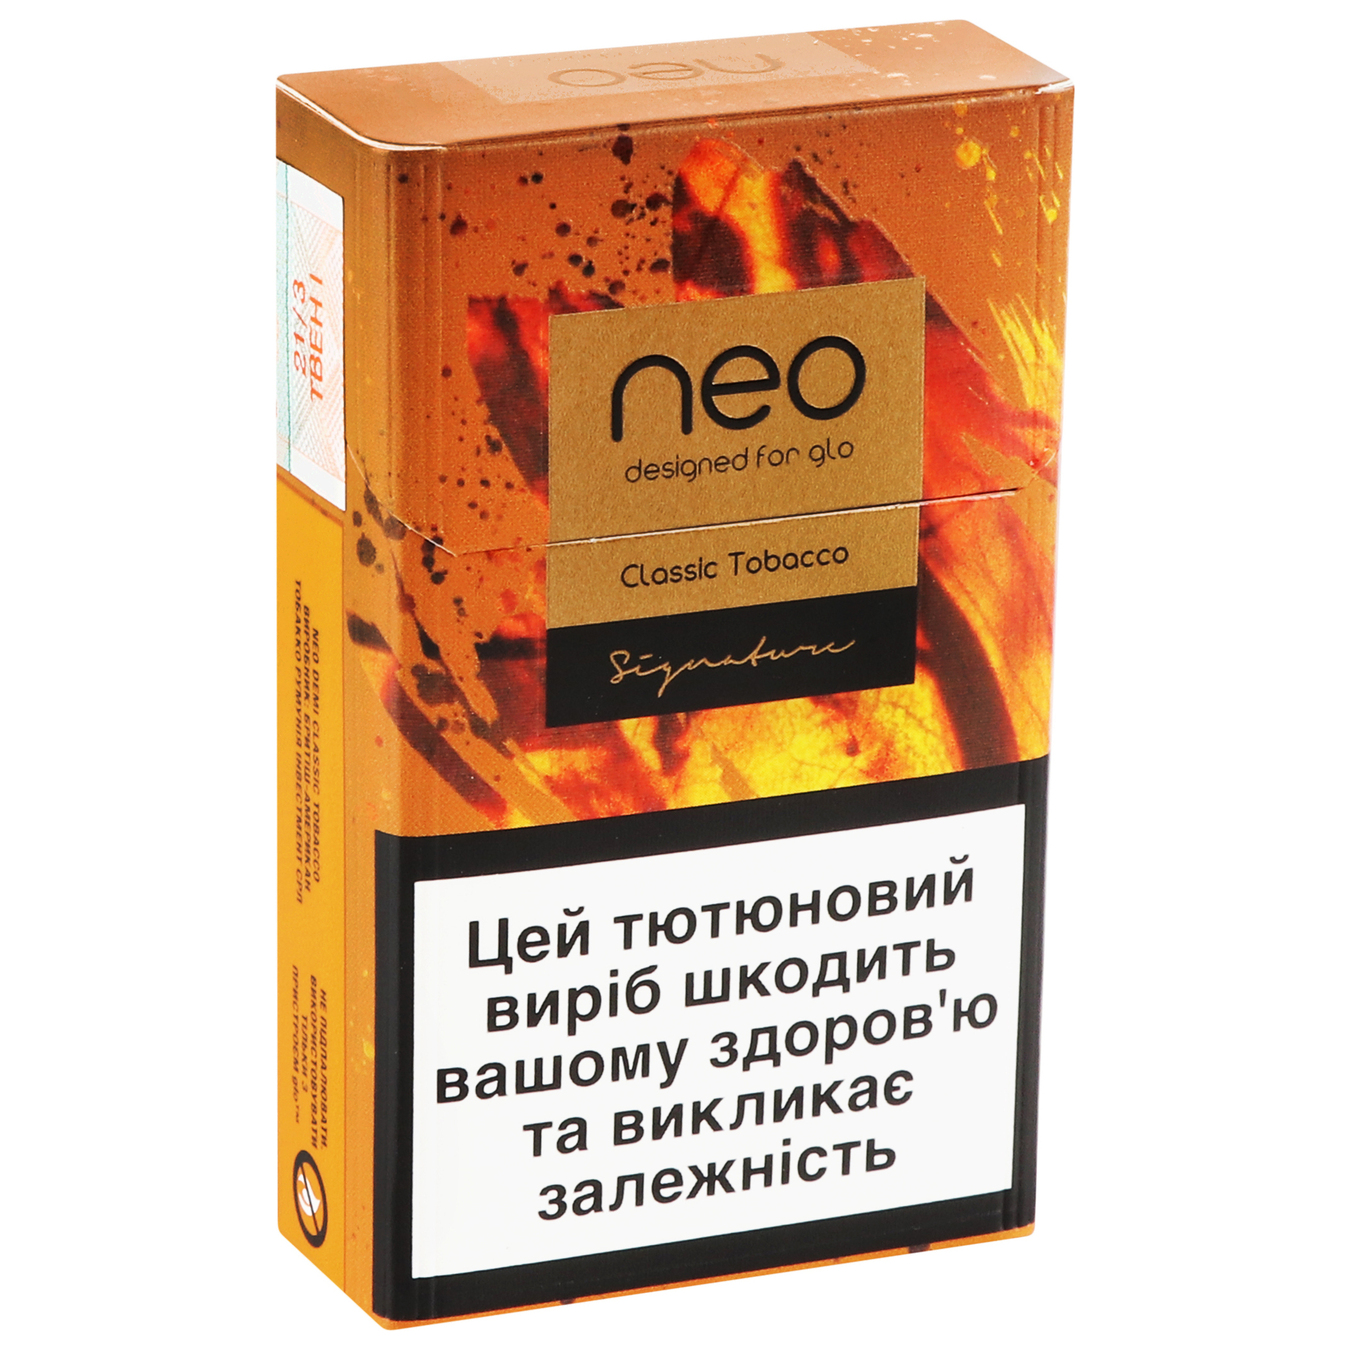 Стики Neo Demi Classic Tobacco табакосодержащие 20шт (цена указана без акциза) 3